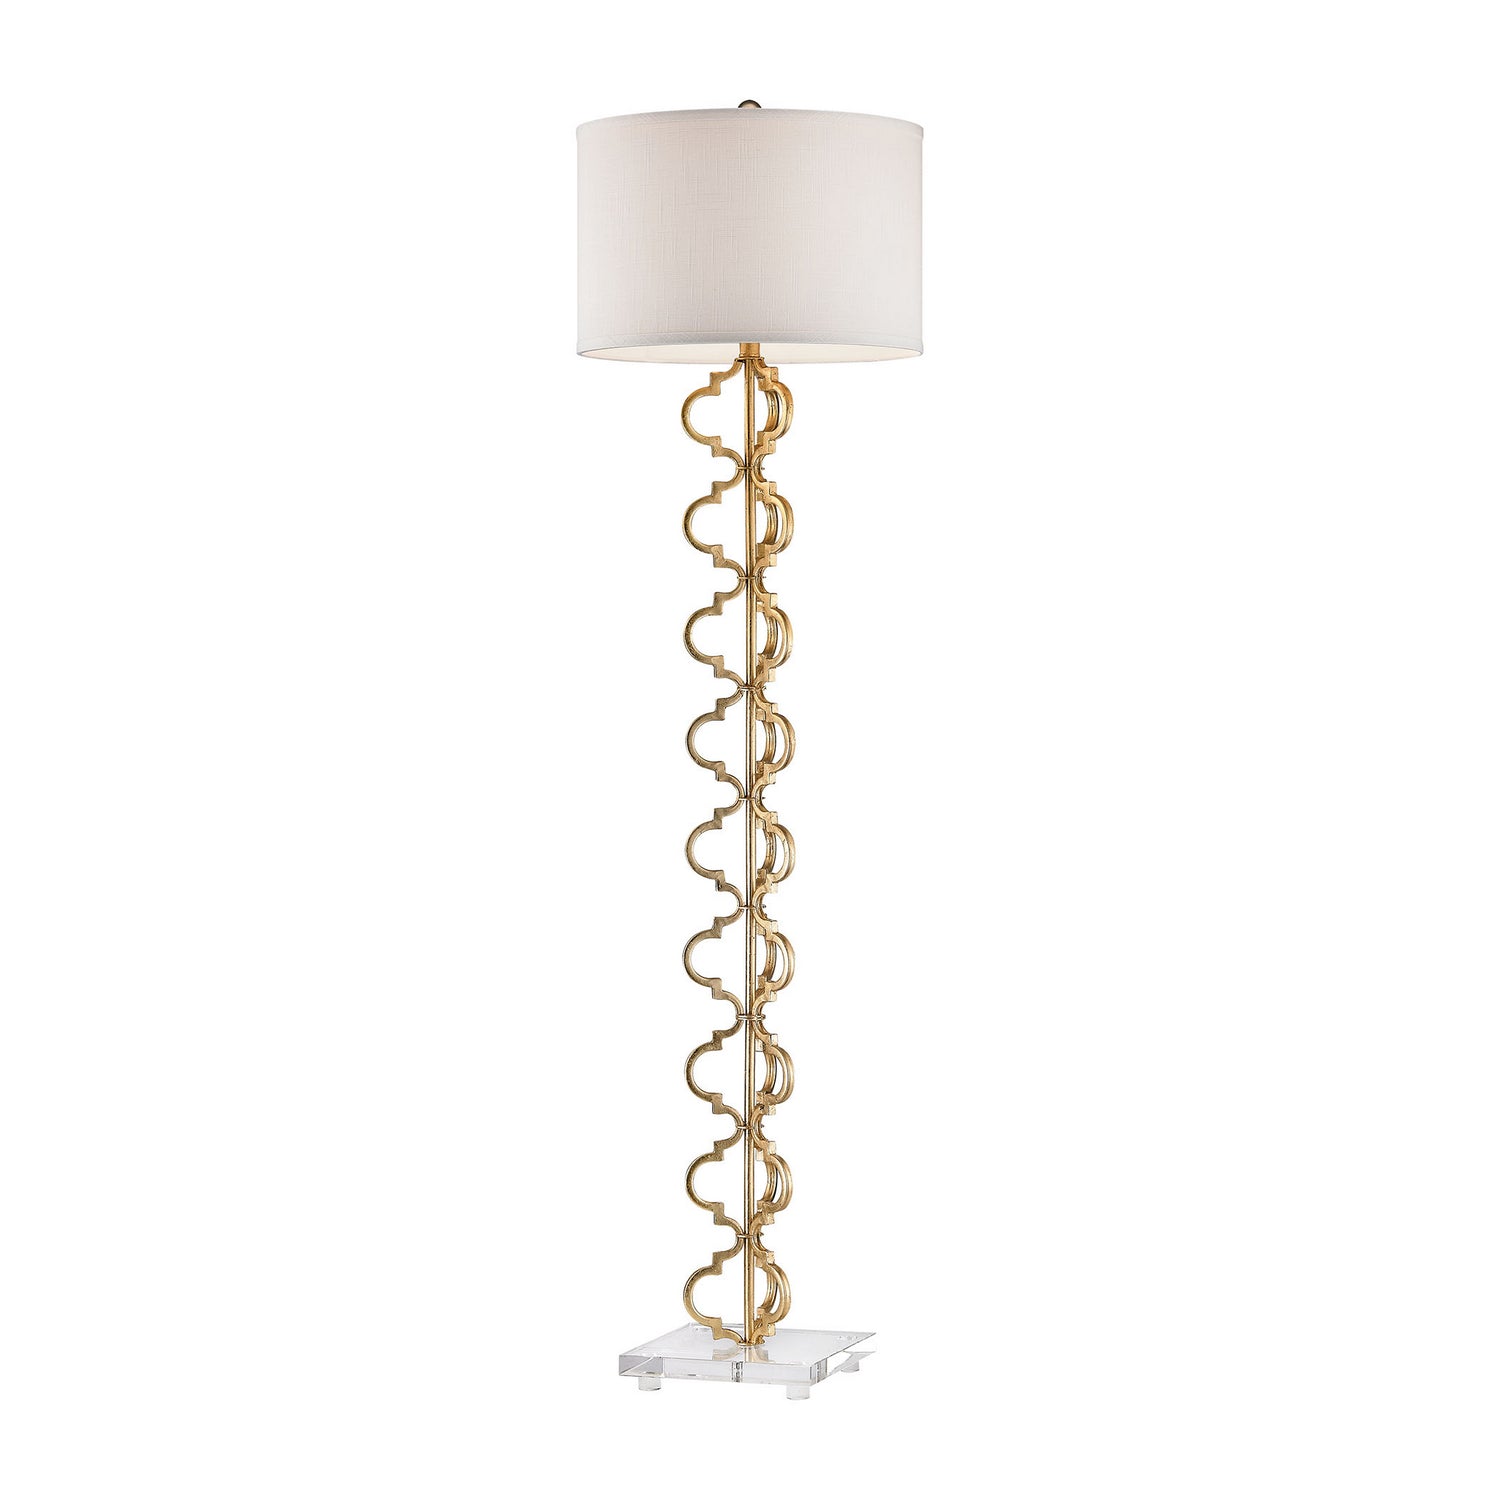 ELK Home - One Light Floor Lamp - Castile - Gold Leaf- Union Lighting Luminaires Decor